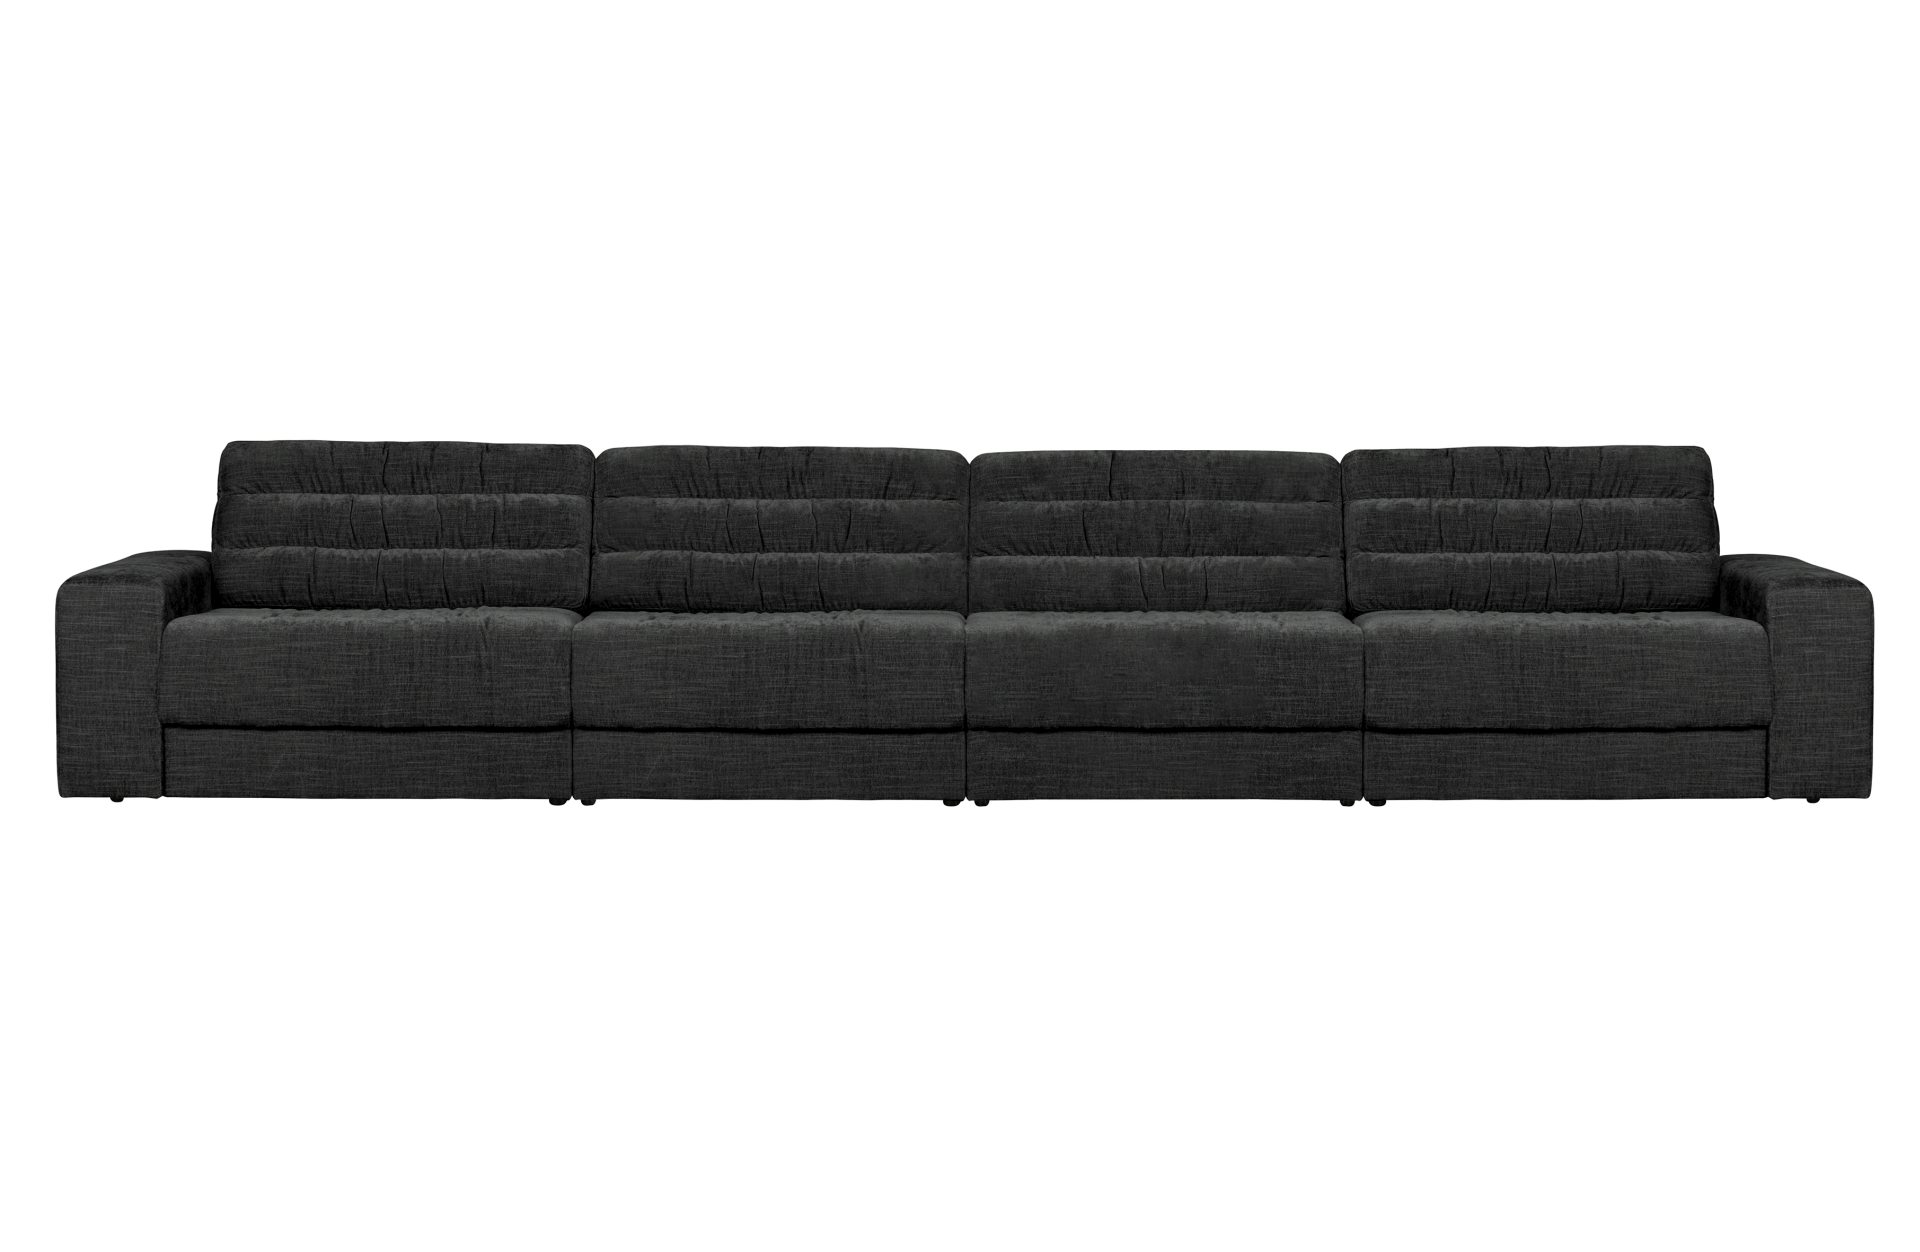 Das Sofa Date überzeugt mit seinem klassischen Design. Gefertigt wurde es aus einem Vintage Stoff, welcher einen Anthrazit Farbton besitzen. Das Gestell ist aus Kunststoff und hat eine schwarze Farbe. Das Sofa hat eine Breite von 406 cm.